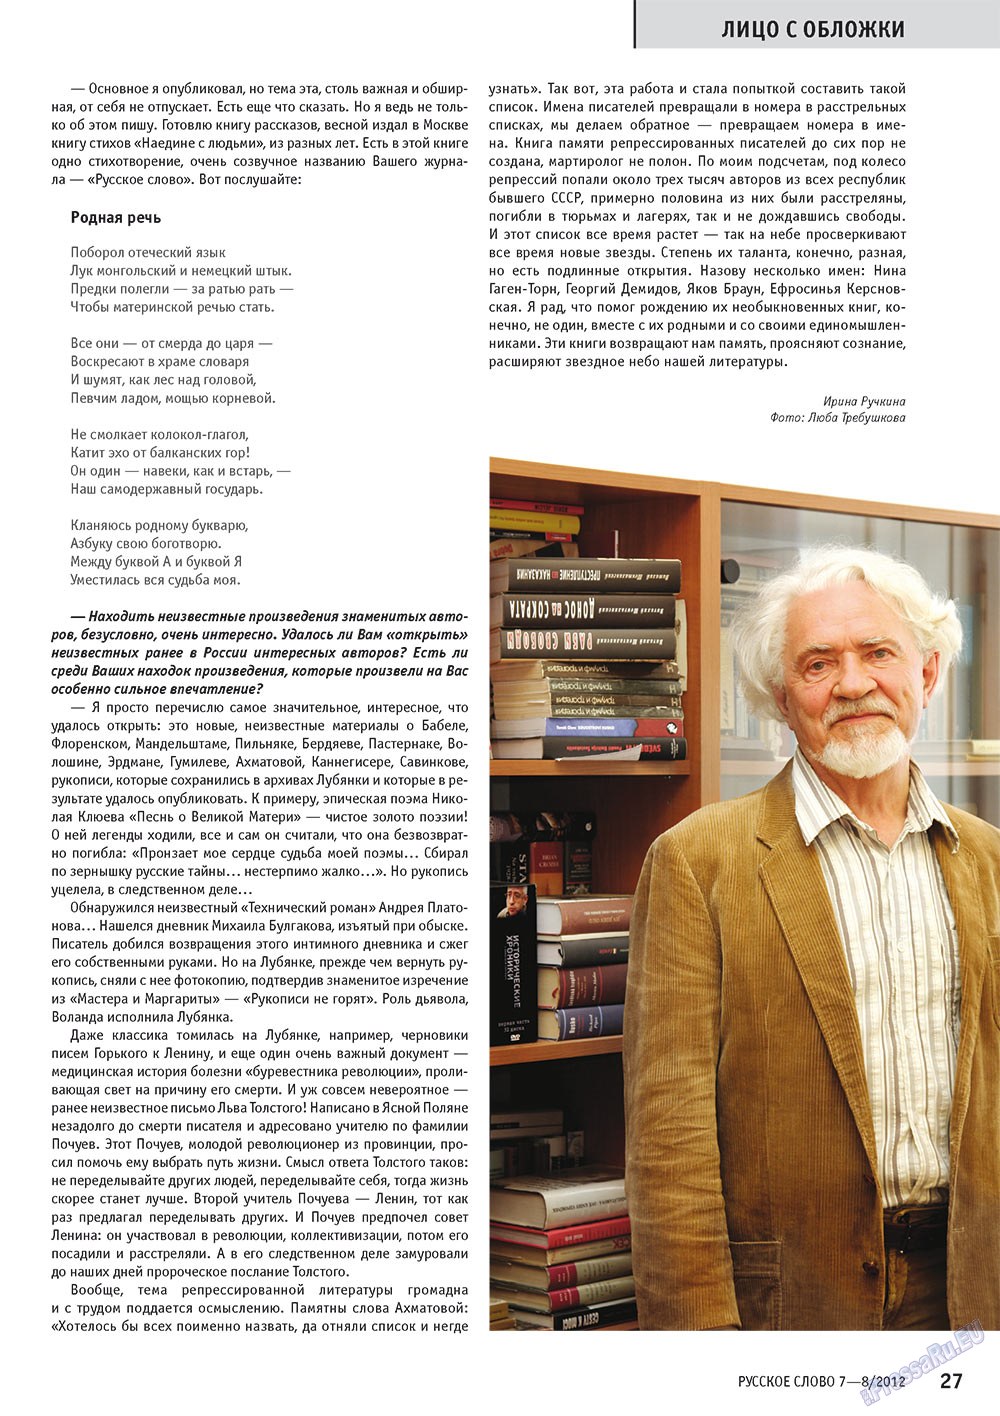 Русское слово, журнал. 2012 №7 стр.27